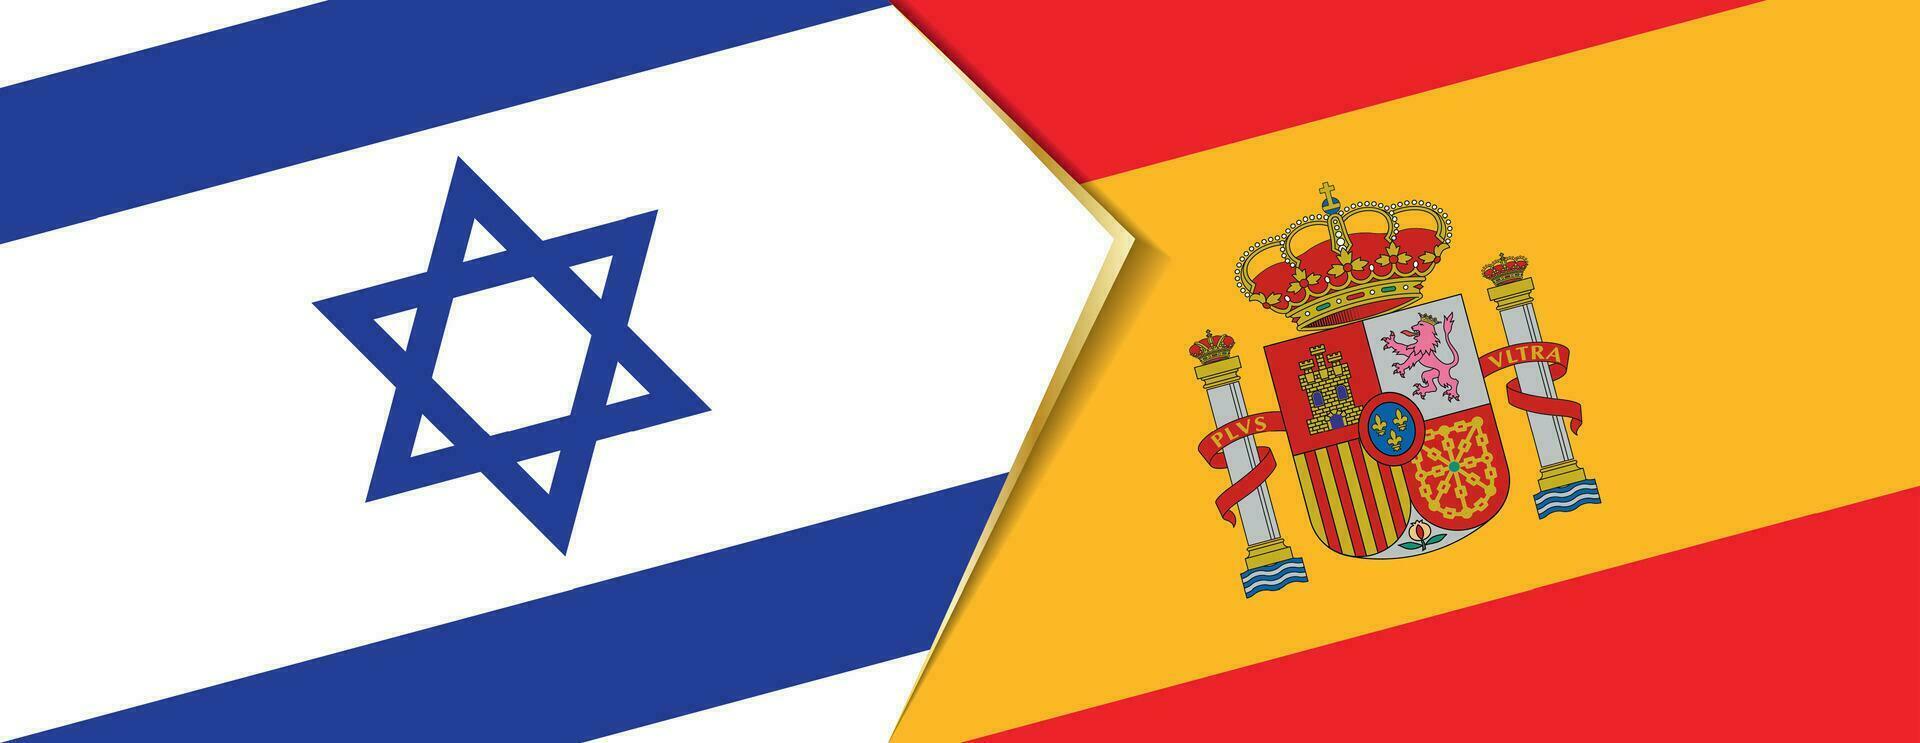 Israel och Spanien flaggor, två vektor flaggor.